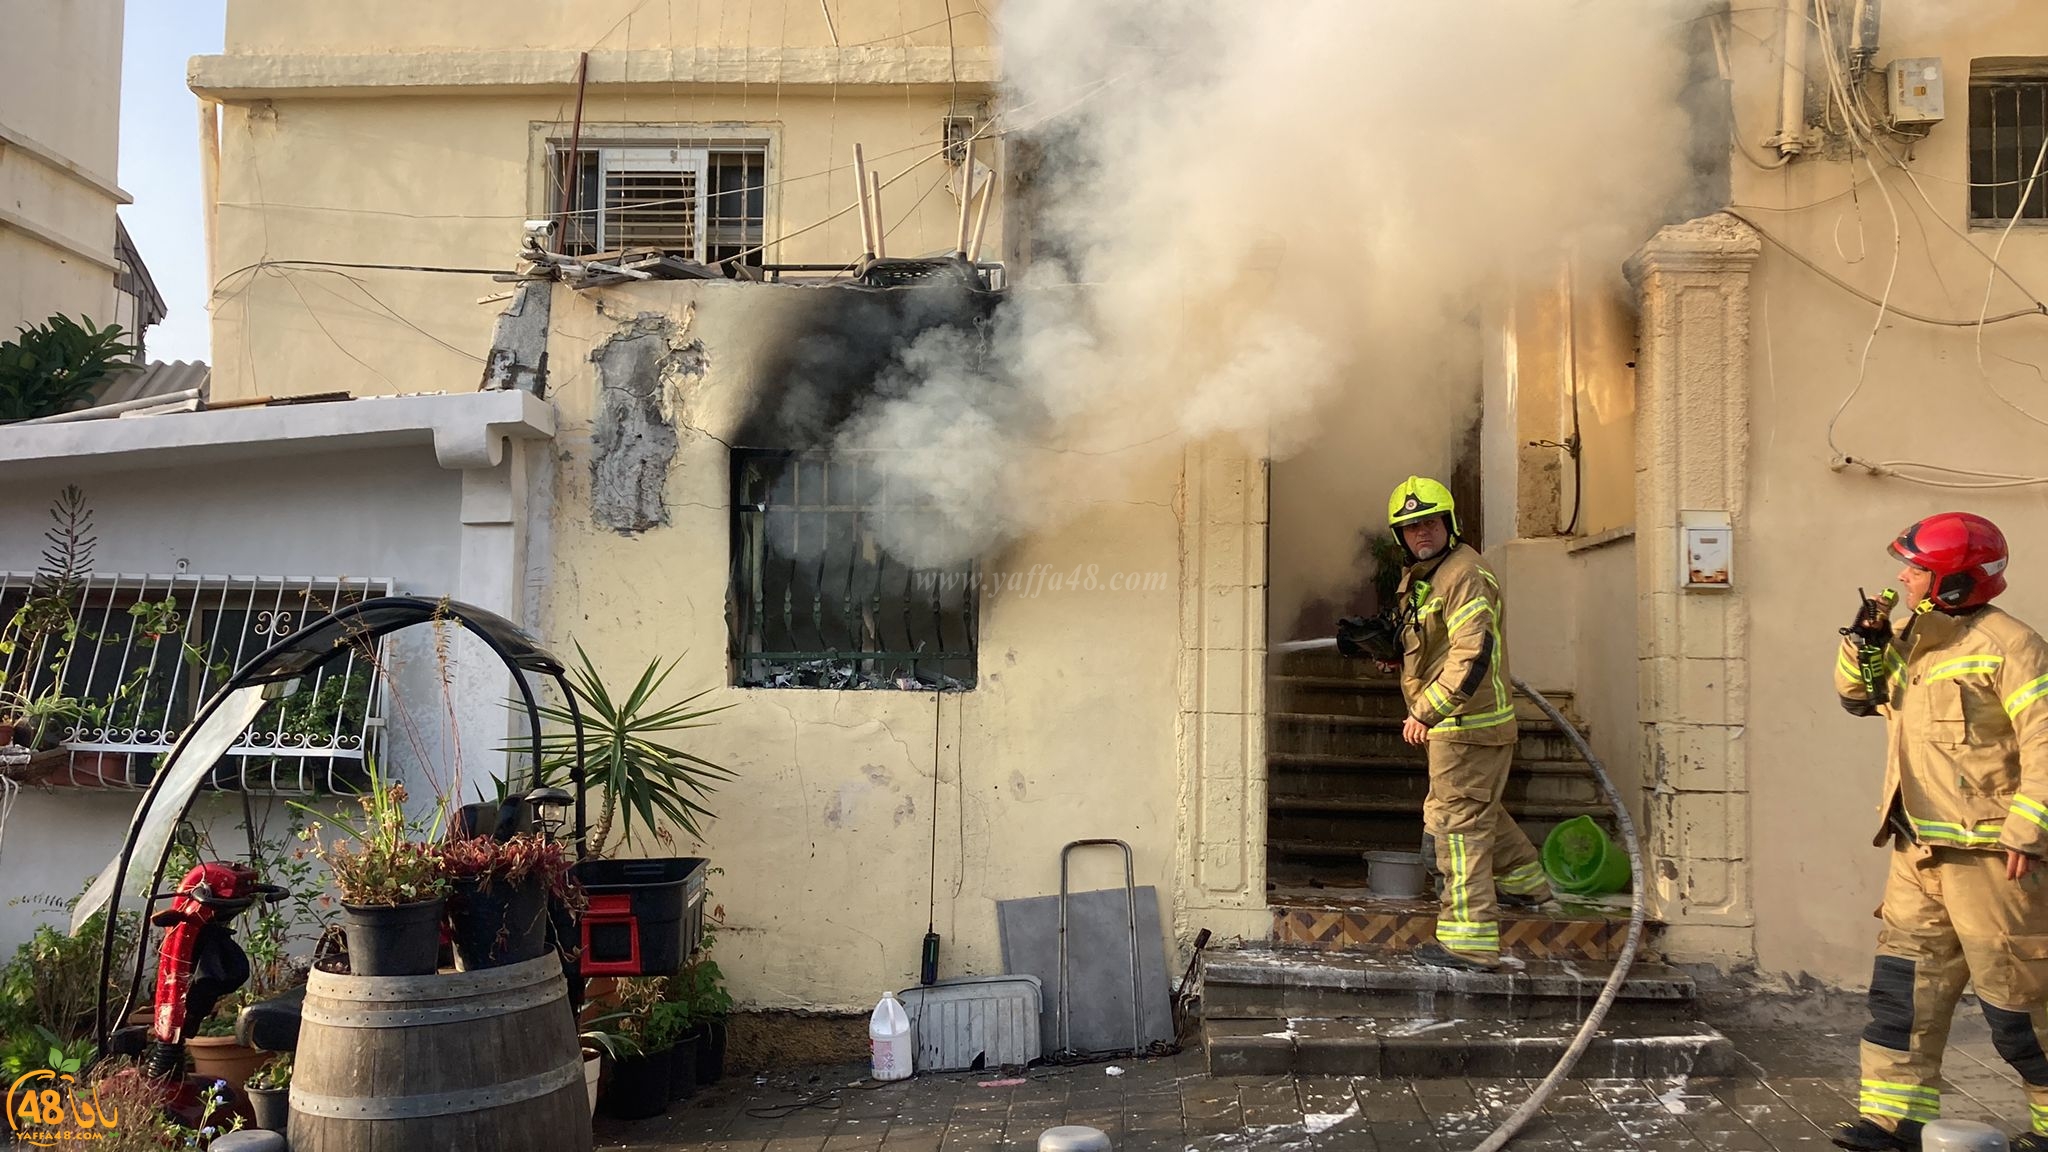   يافا: اصابة طفيفة لشخصين اثر حريق في أحد المنازل 